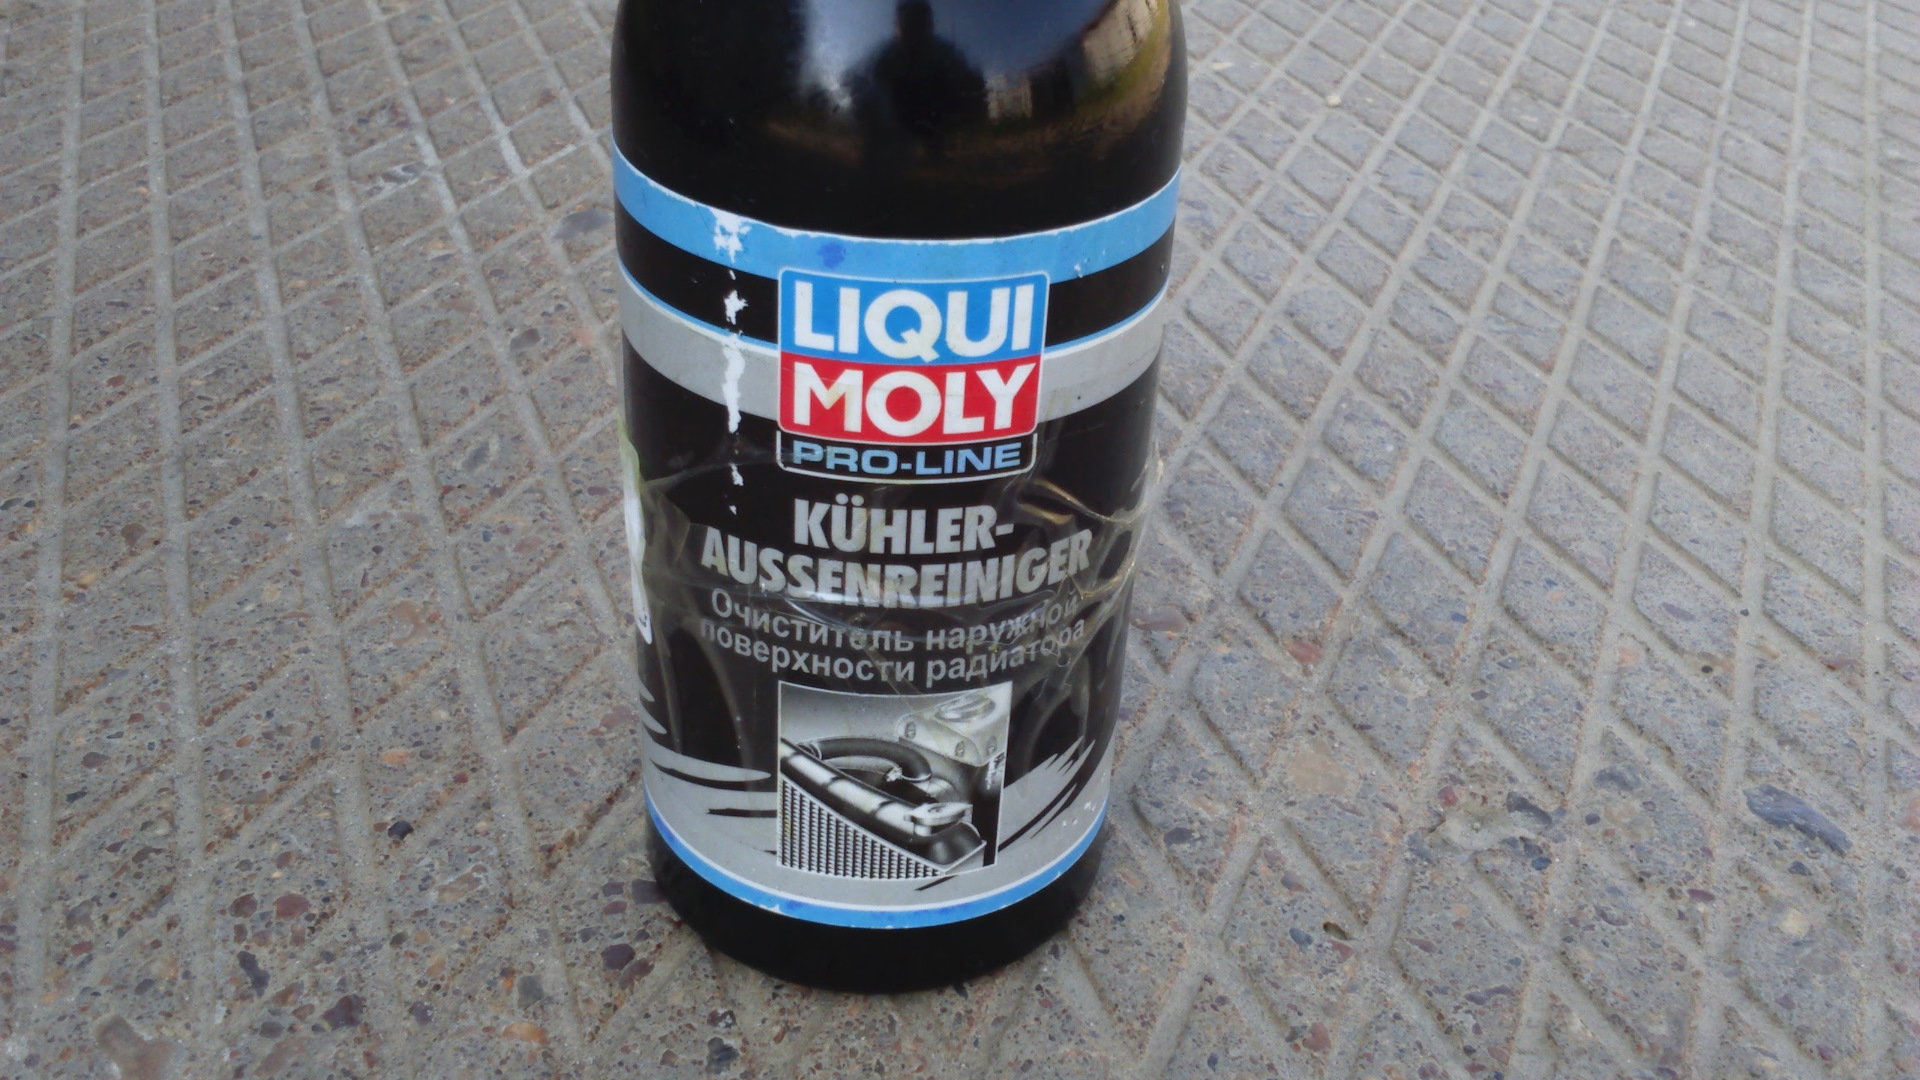 Наружный очиститель радиатора KUHLER Aussenreiniger. Очиститель радиатора наружный Liqui Moly. Liqui Moly 3959 очиститель радиатора\. Очиститель радиатора Ликви Молли.